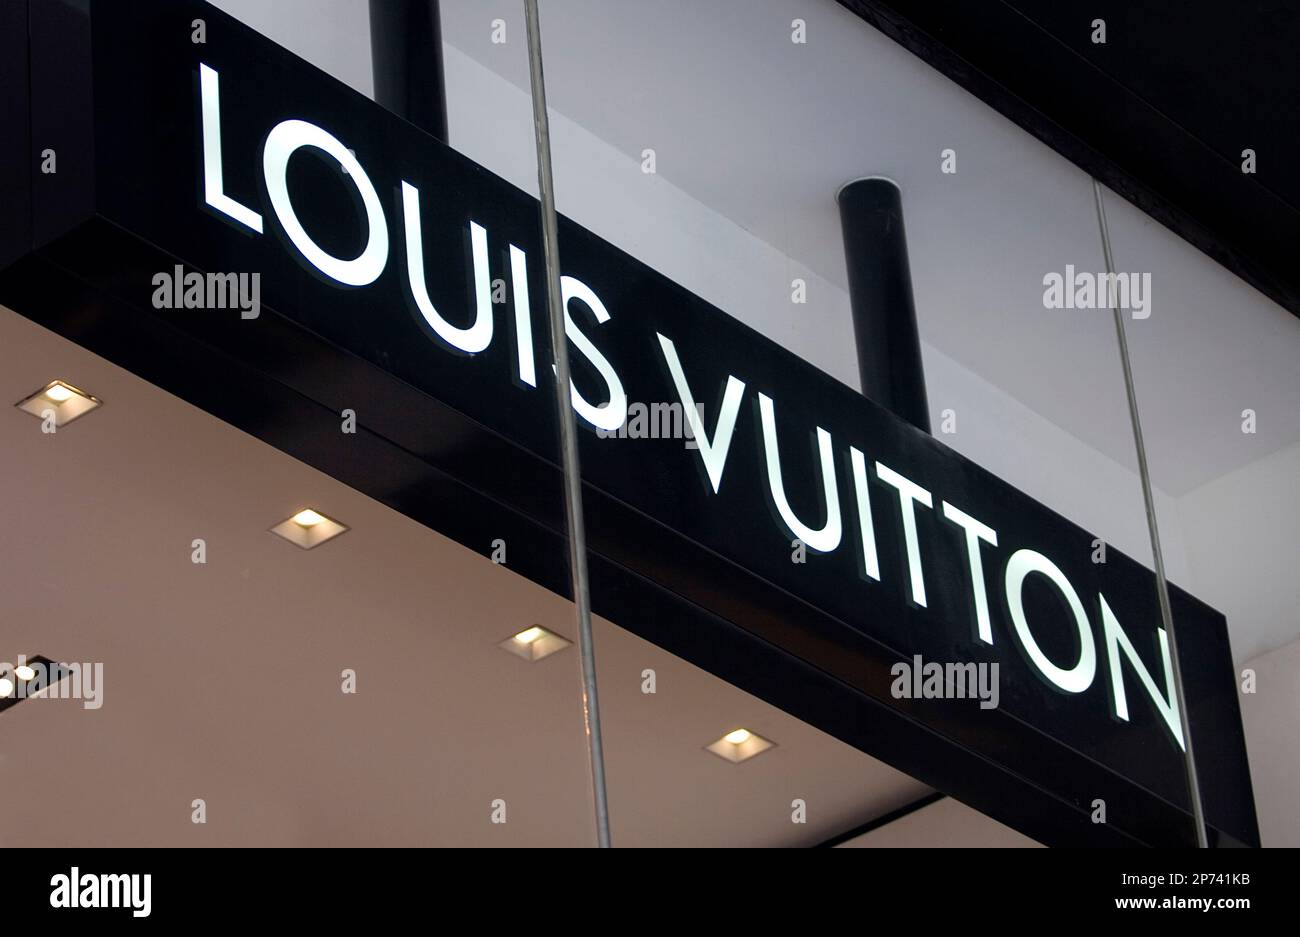 Louis Vuitton London Sloane Street Store in London, United Kingdom